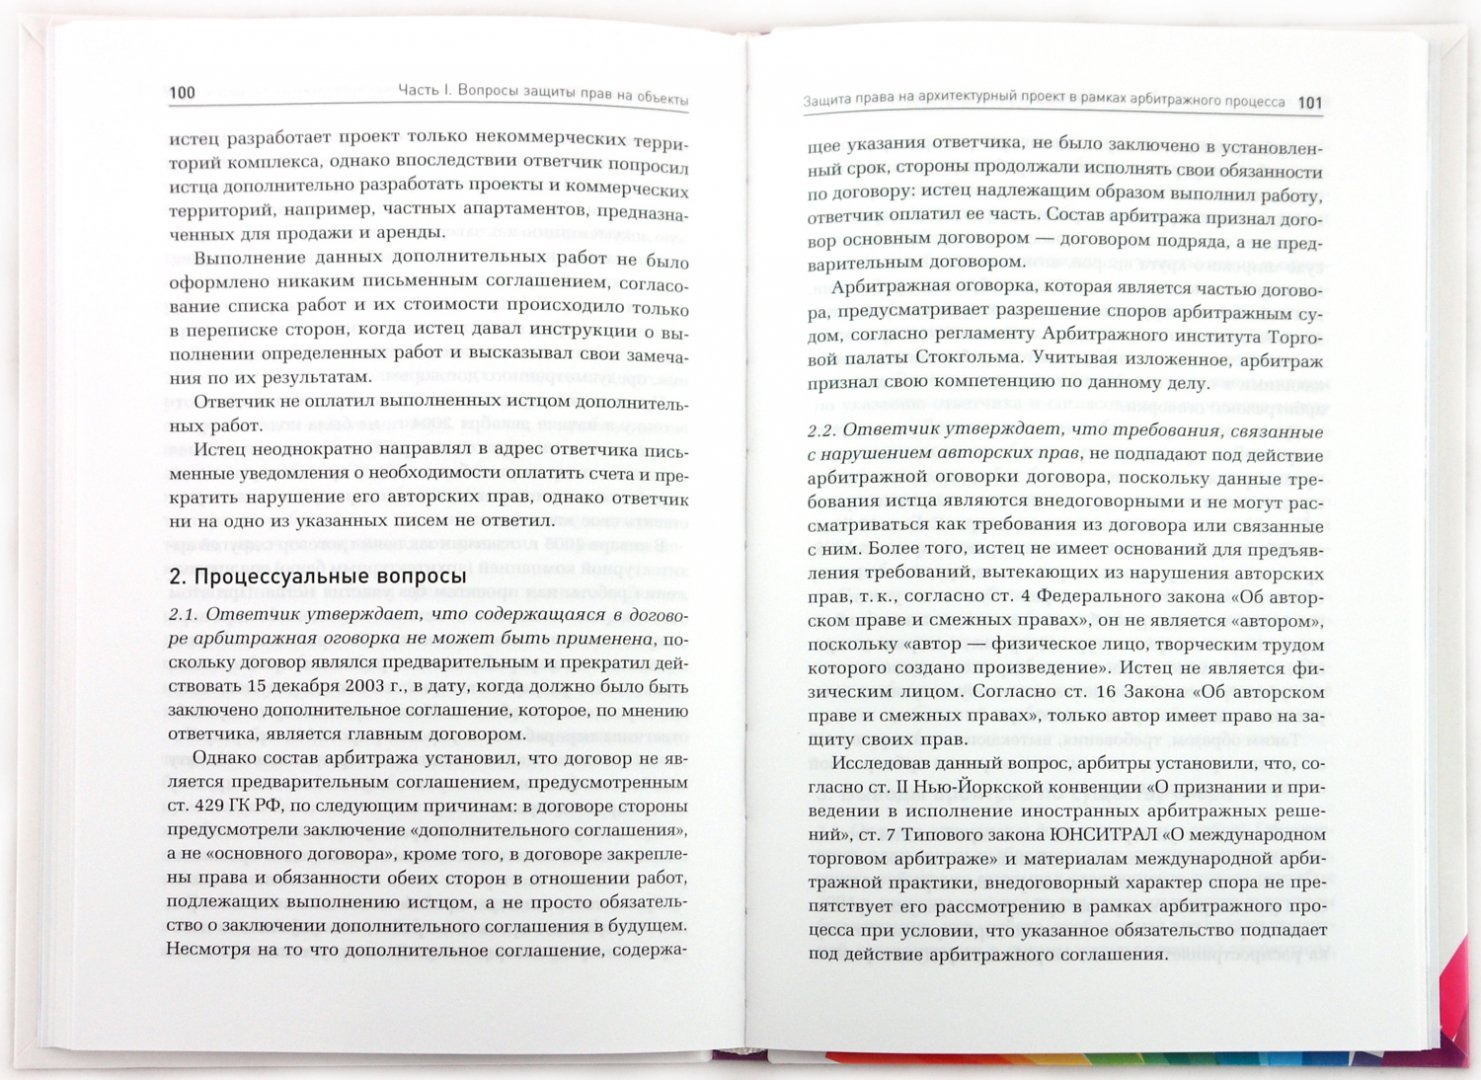 Иллюстрация 1 из 12 для Интеллектуальная собственность и реклама: актуальные вопросы административная и судебная практика | Лабиринт - книги. Источник: Лабиринт